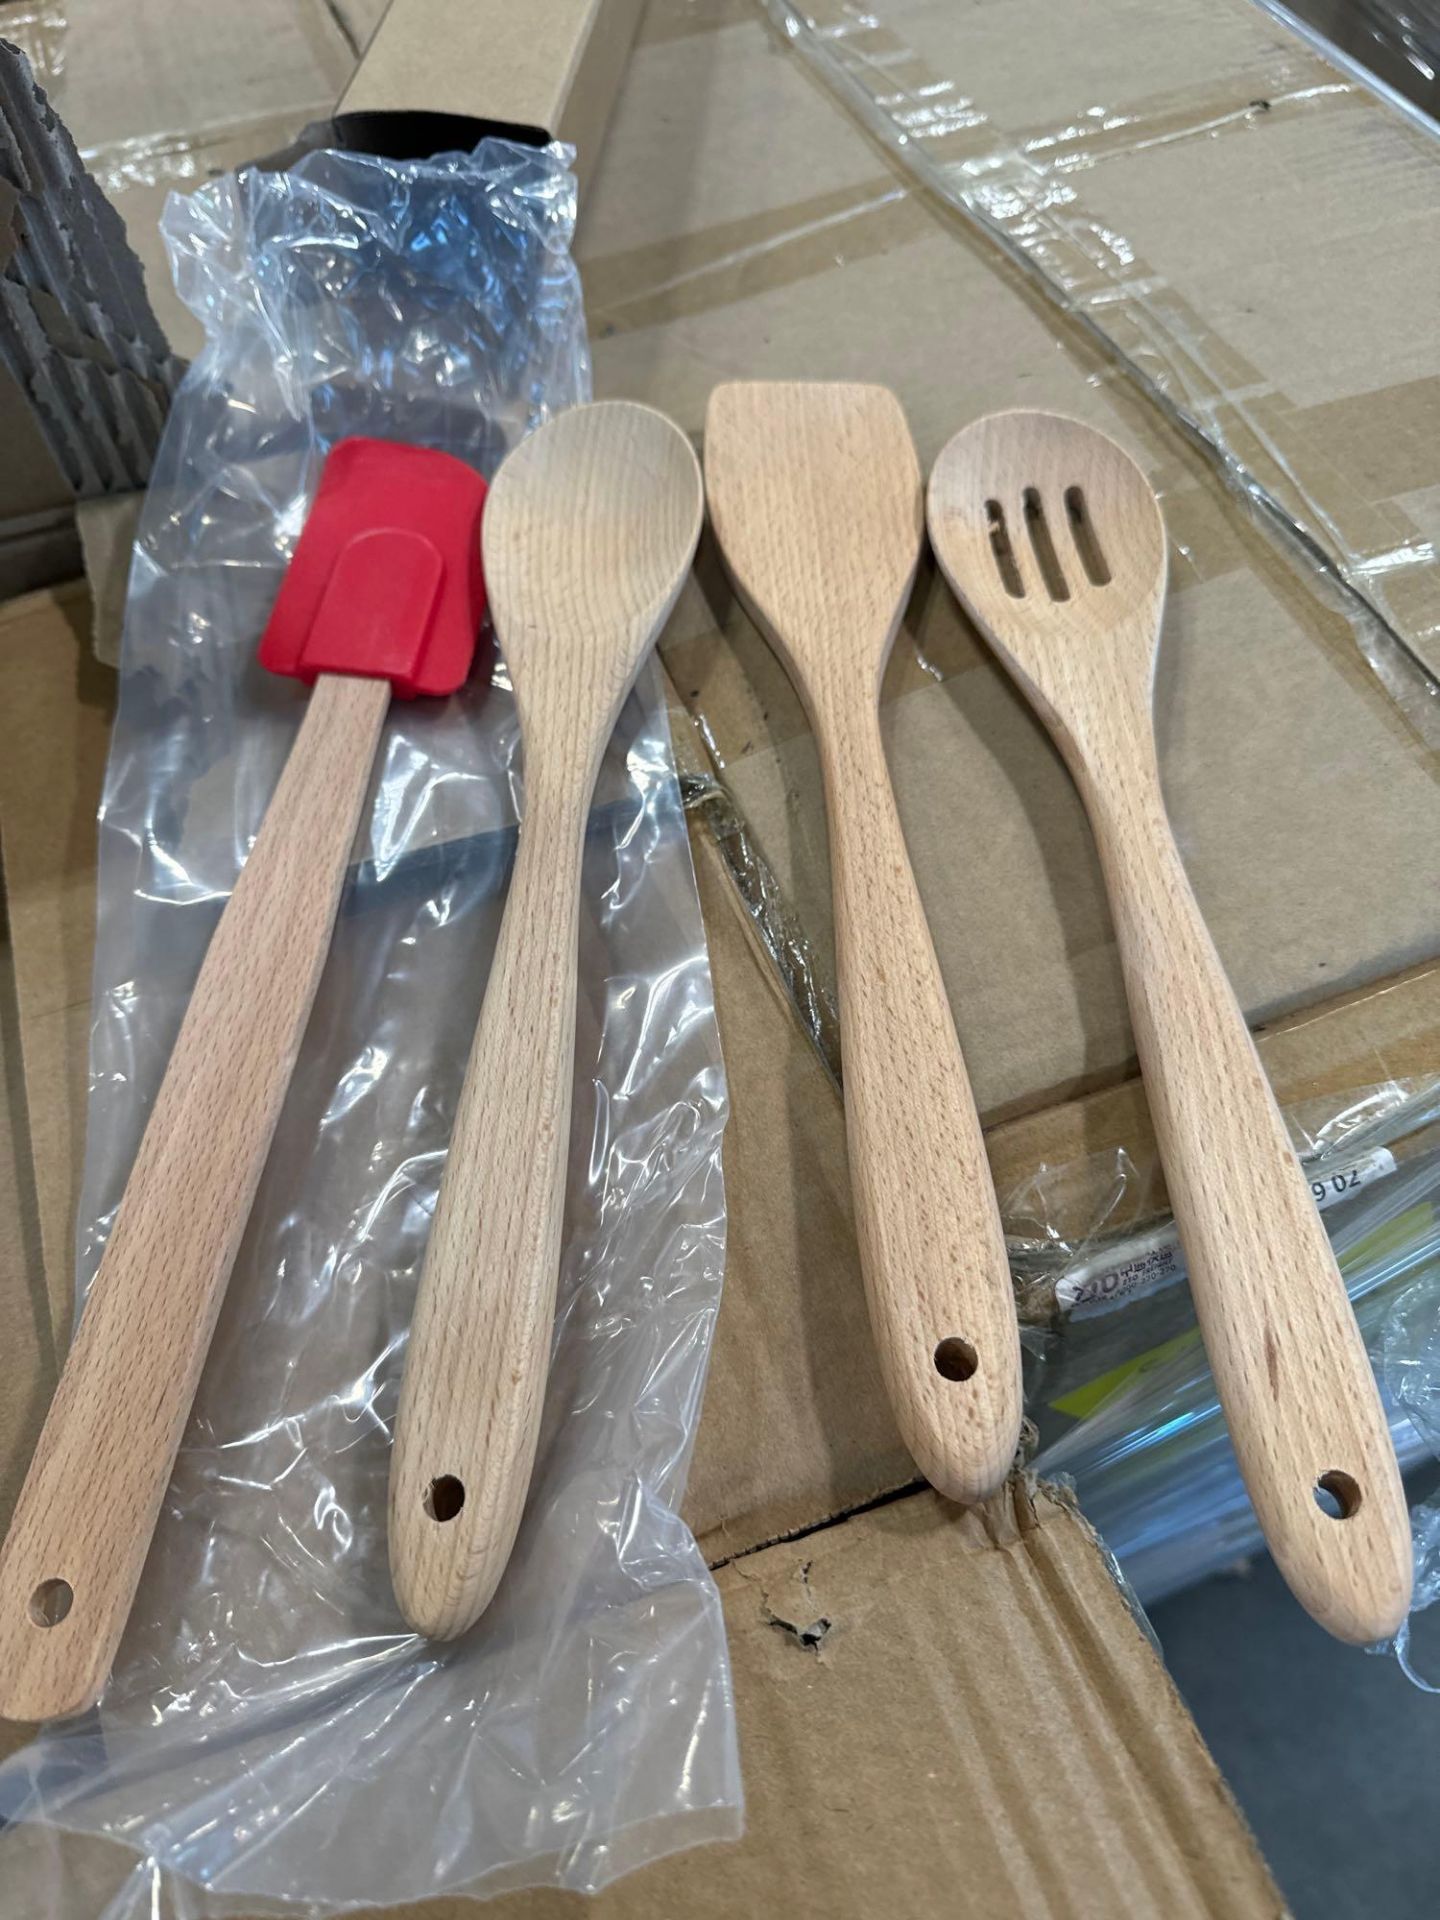 Boxes of 4 piece kitchen utensils